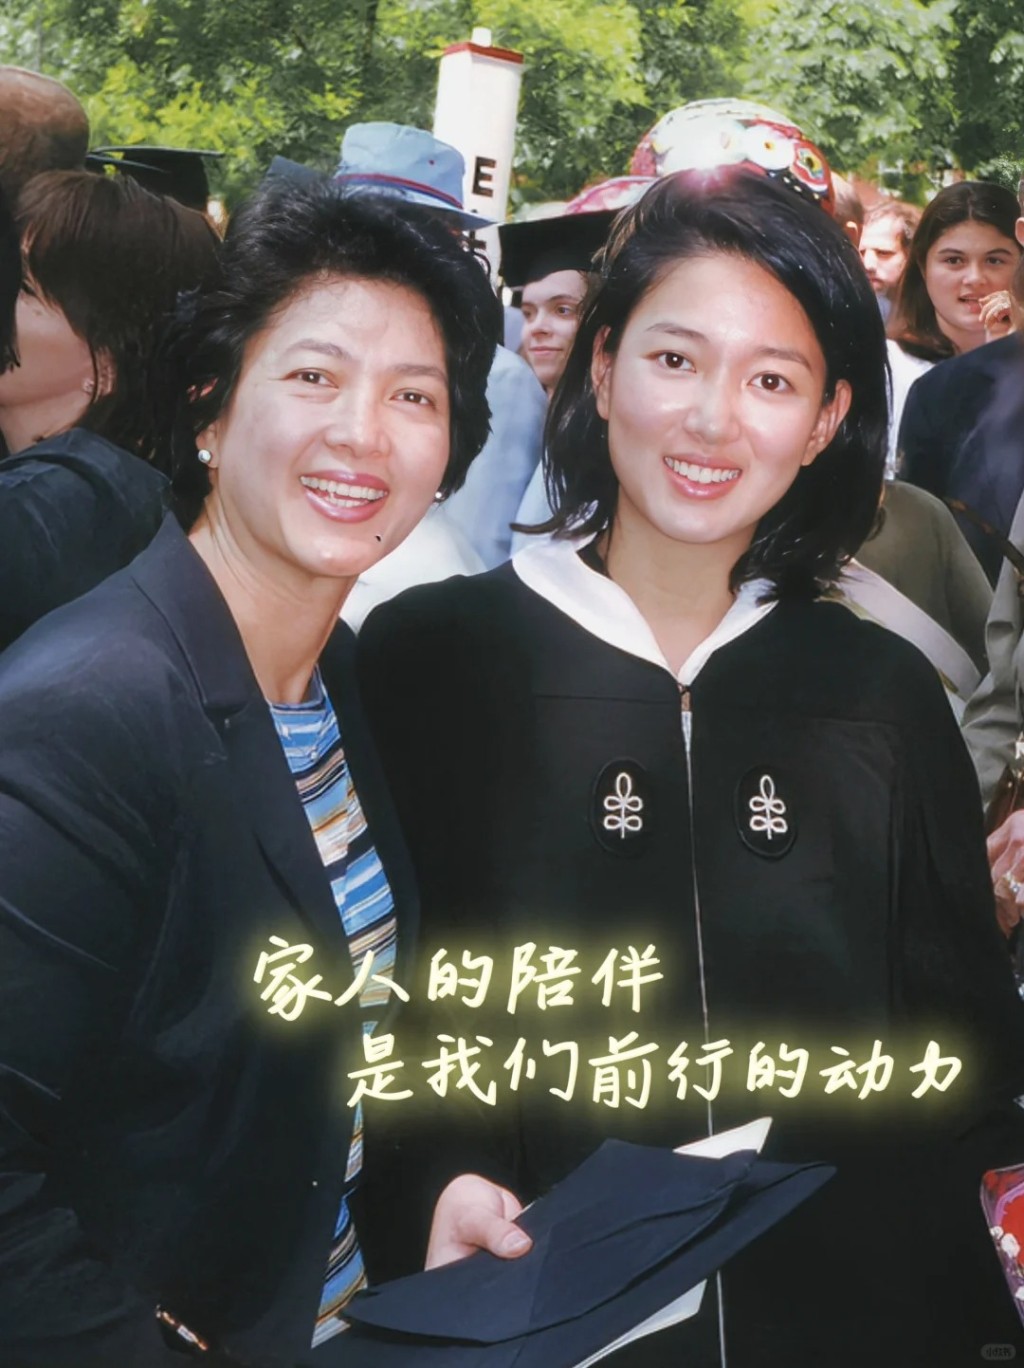 郭惠光是哈佛大学高材生。